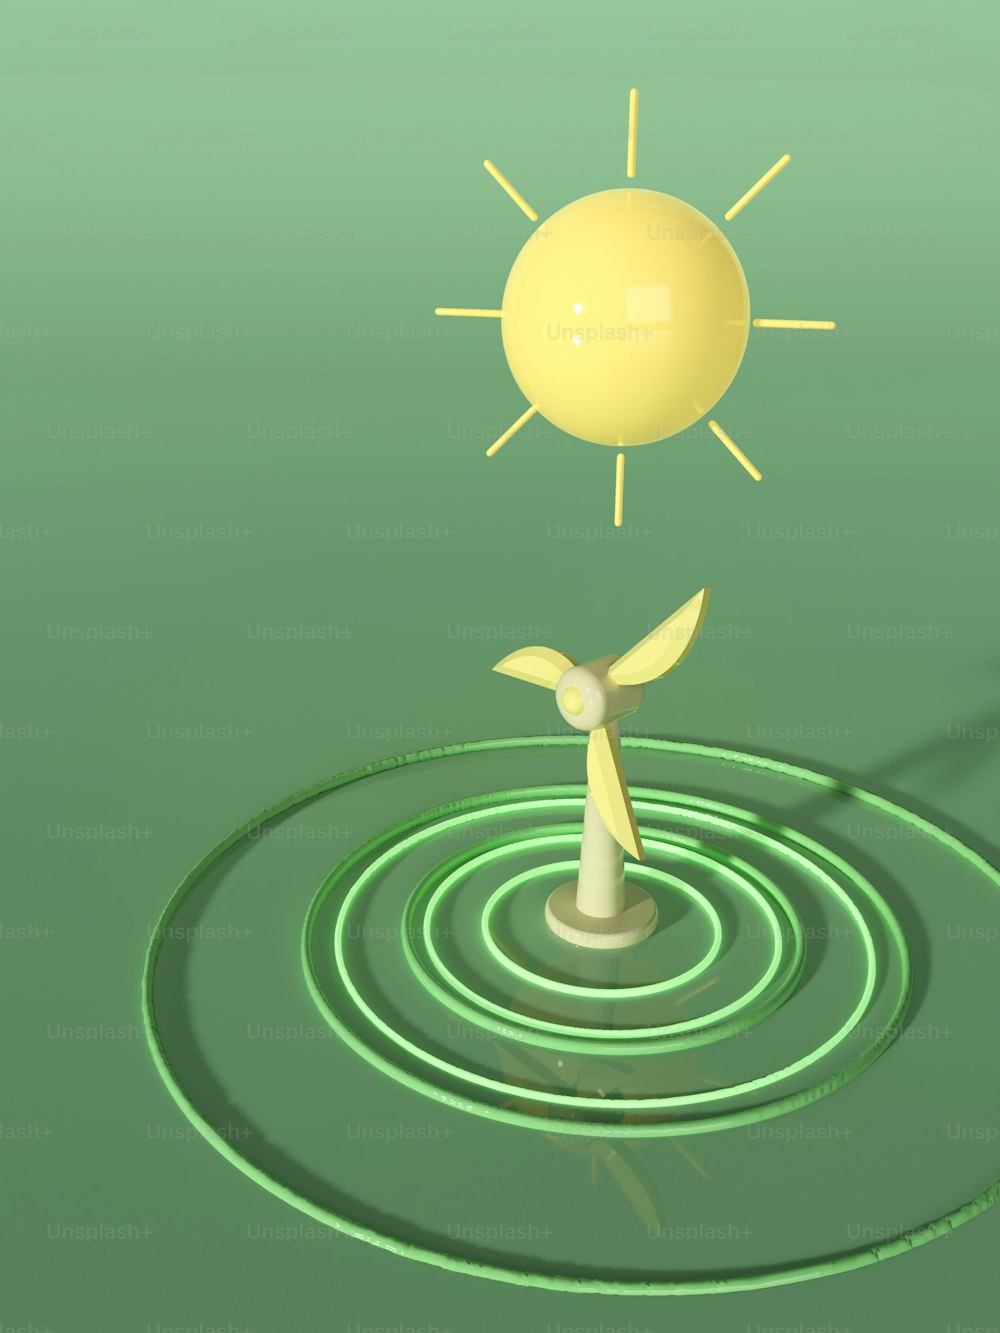 uma imagem gerada por computador de um sol e uma turbina eólica